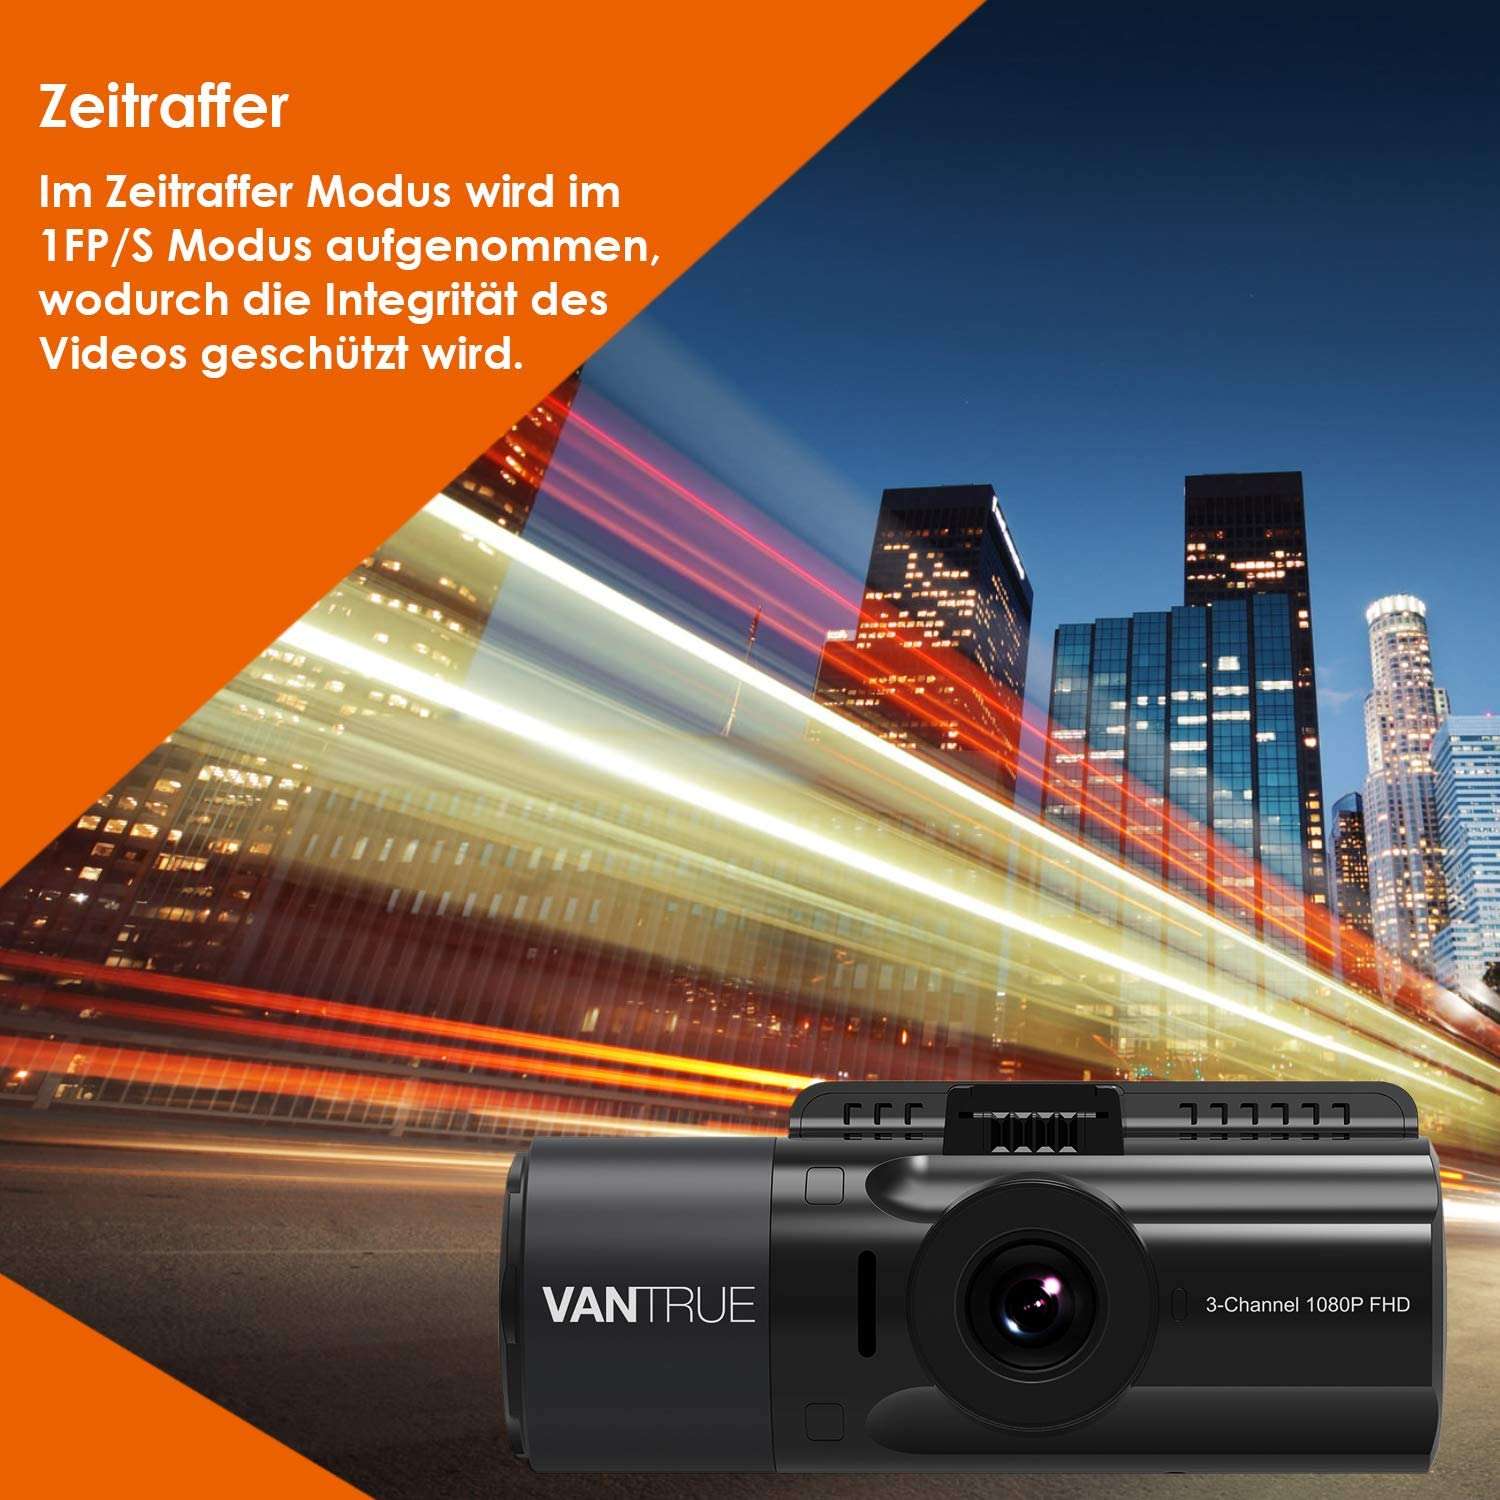 Vantrue N4 3 Channel 1440p Dashcam | mit Hardwire-Kit - Bundle